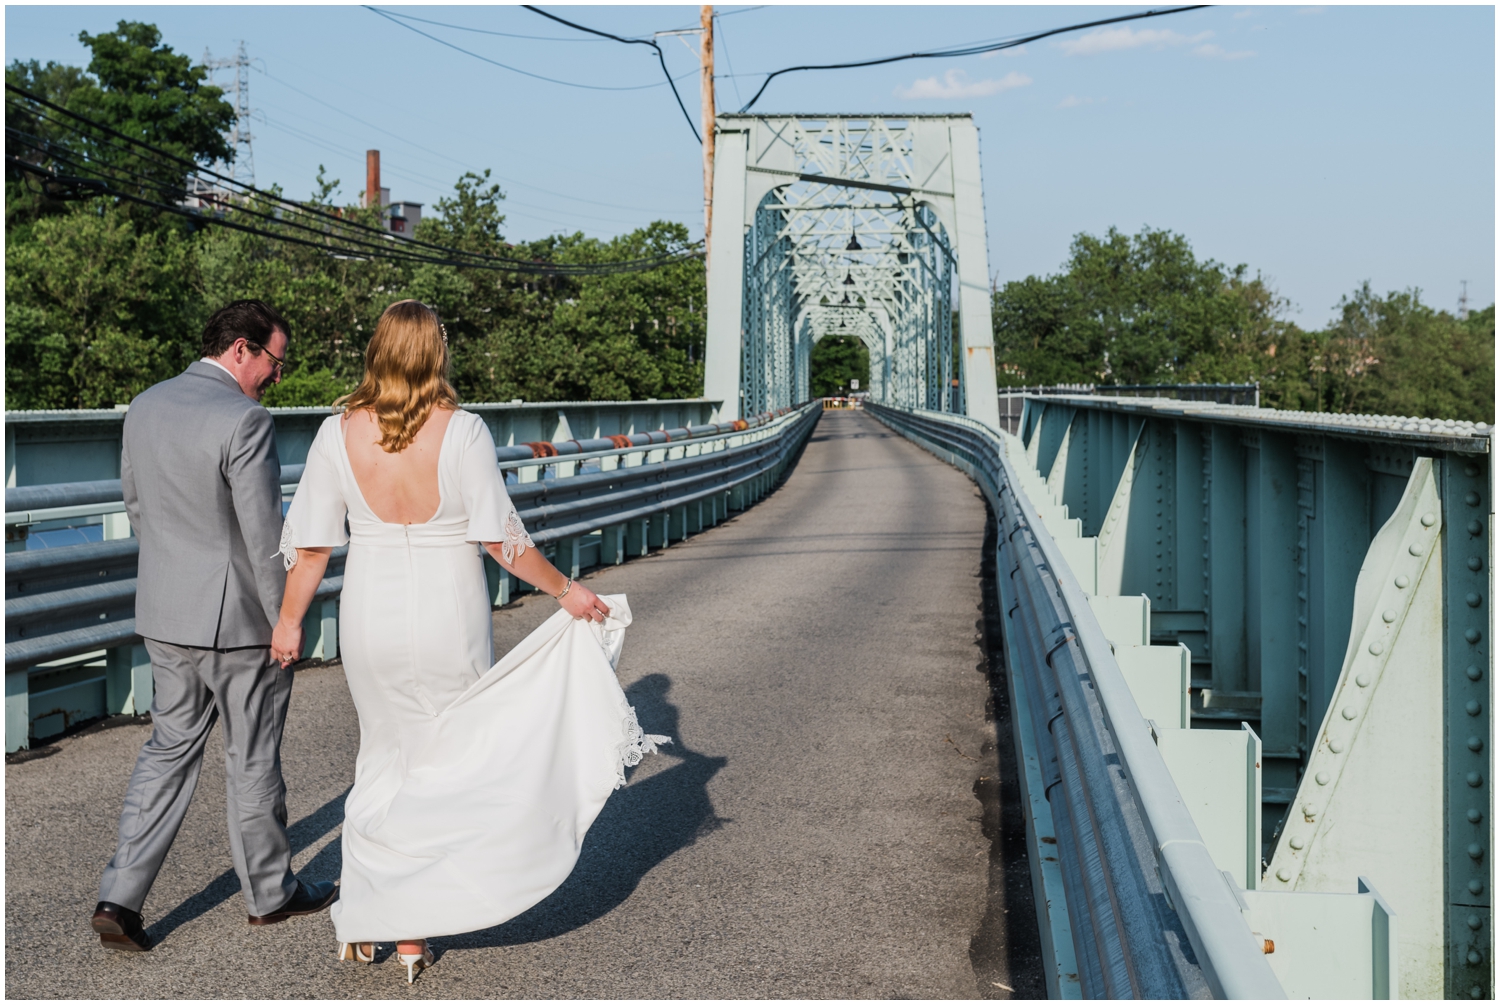 Tori and Alex walk along the Pencoyd Bridge outside their Manayunk wedding venue.